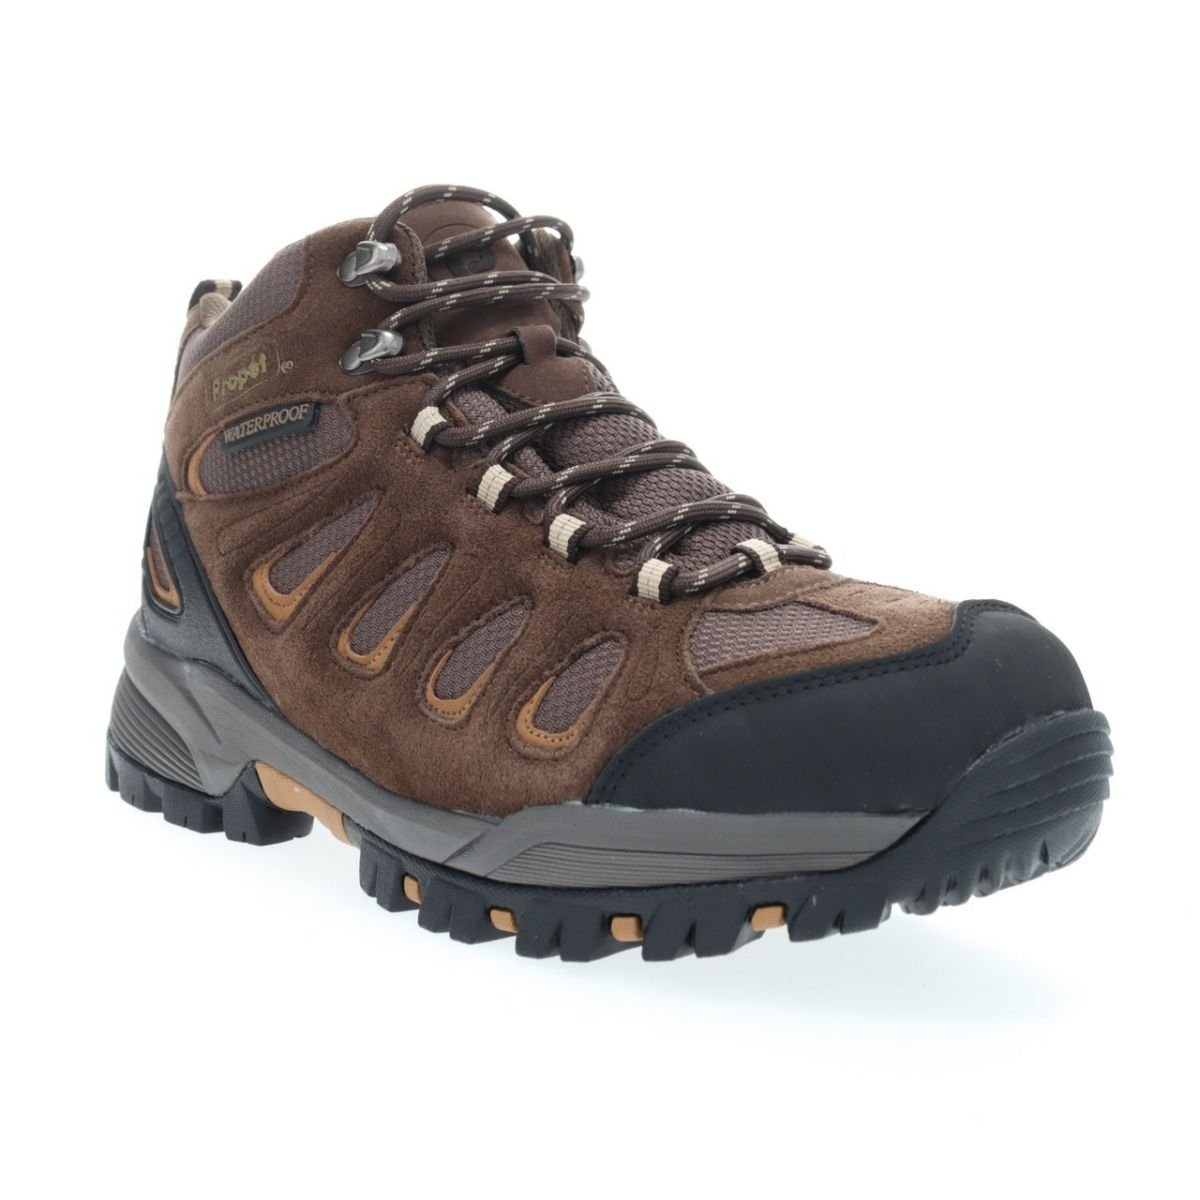 Propet Men's Ridge Walker Hiking Boot Brown - M3599BR 8 XX US Men BROWN - BROWN, 9 XX-Wide